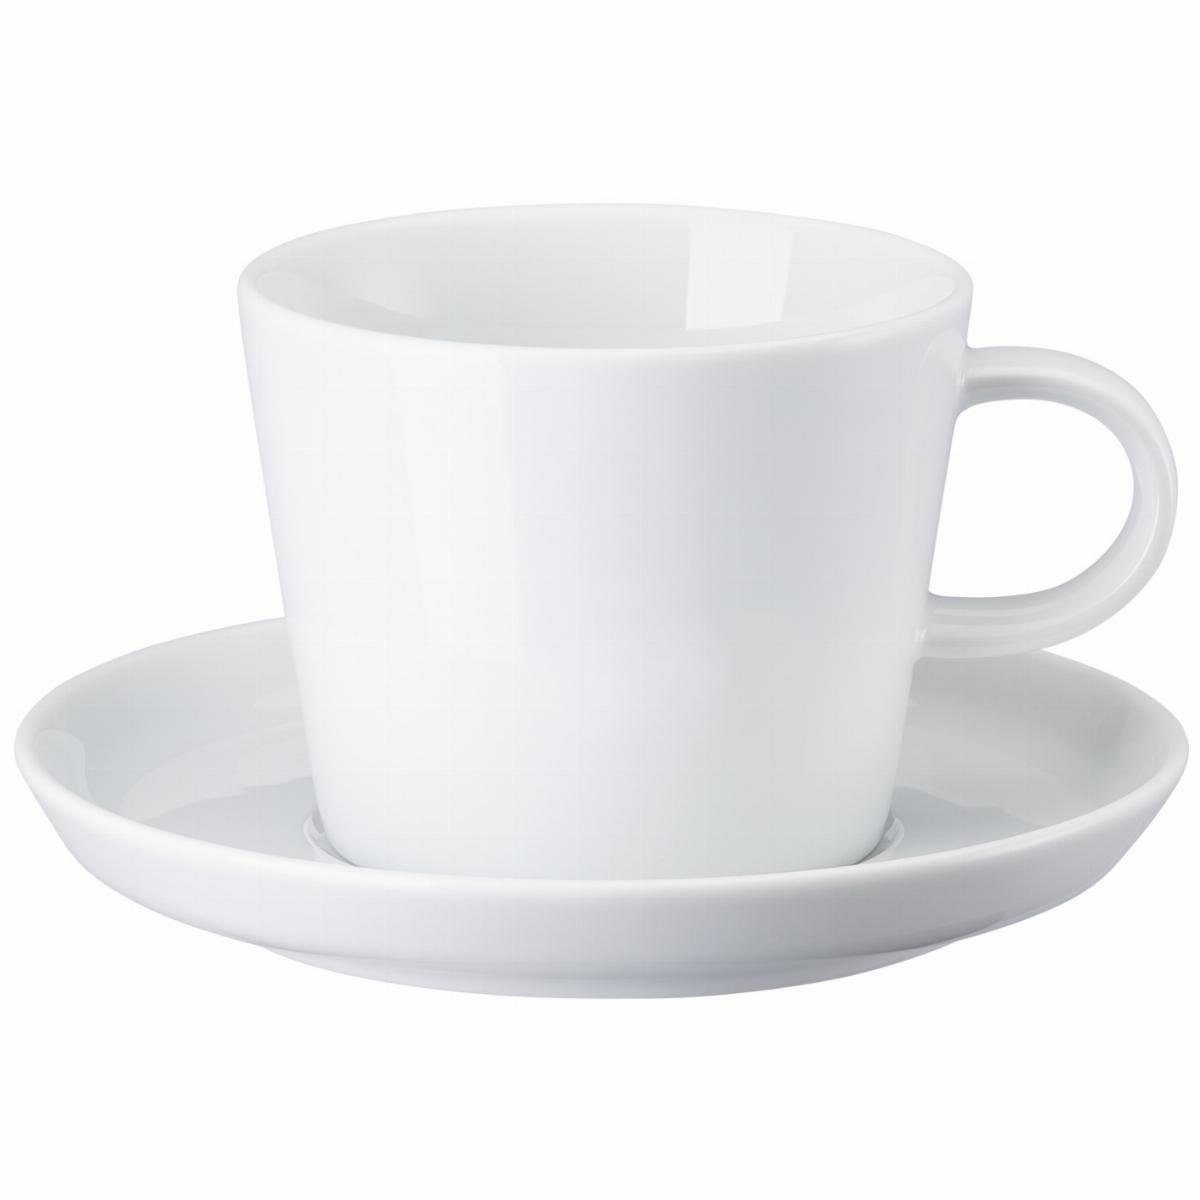 Tasse Au Porzellan, - Tasse spülmaschinenfest CUCINA 1 Set, BIANCA Café und Lait Porzellan, mikrowellengeeignet - 2-tlg. ARZBERG Weiß